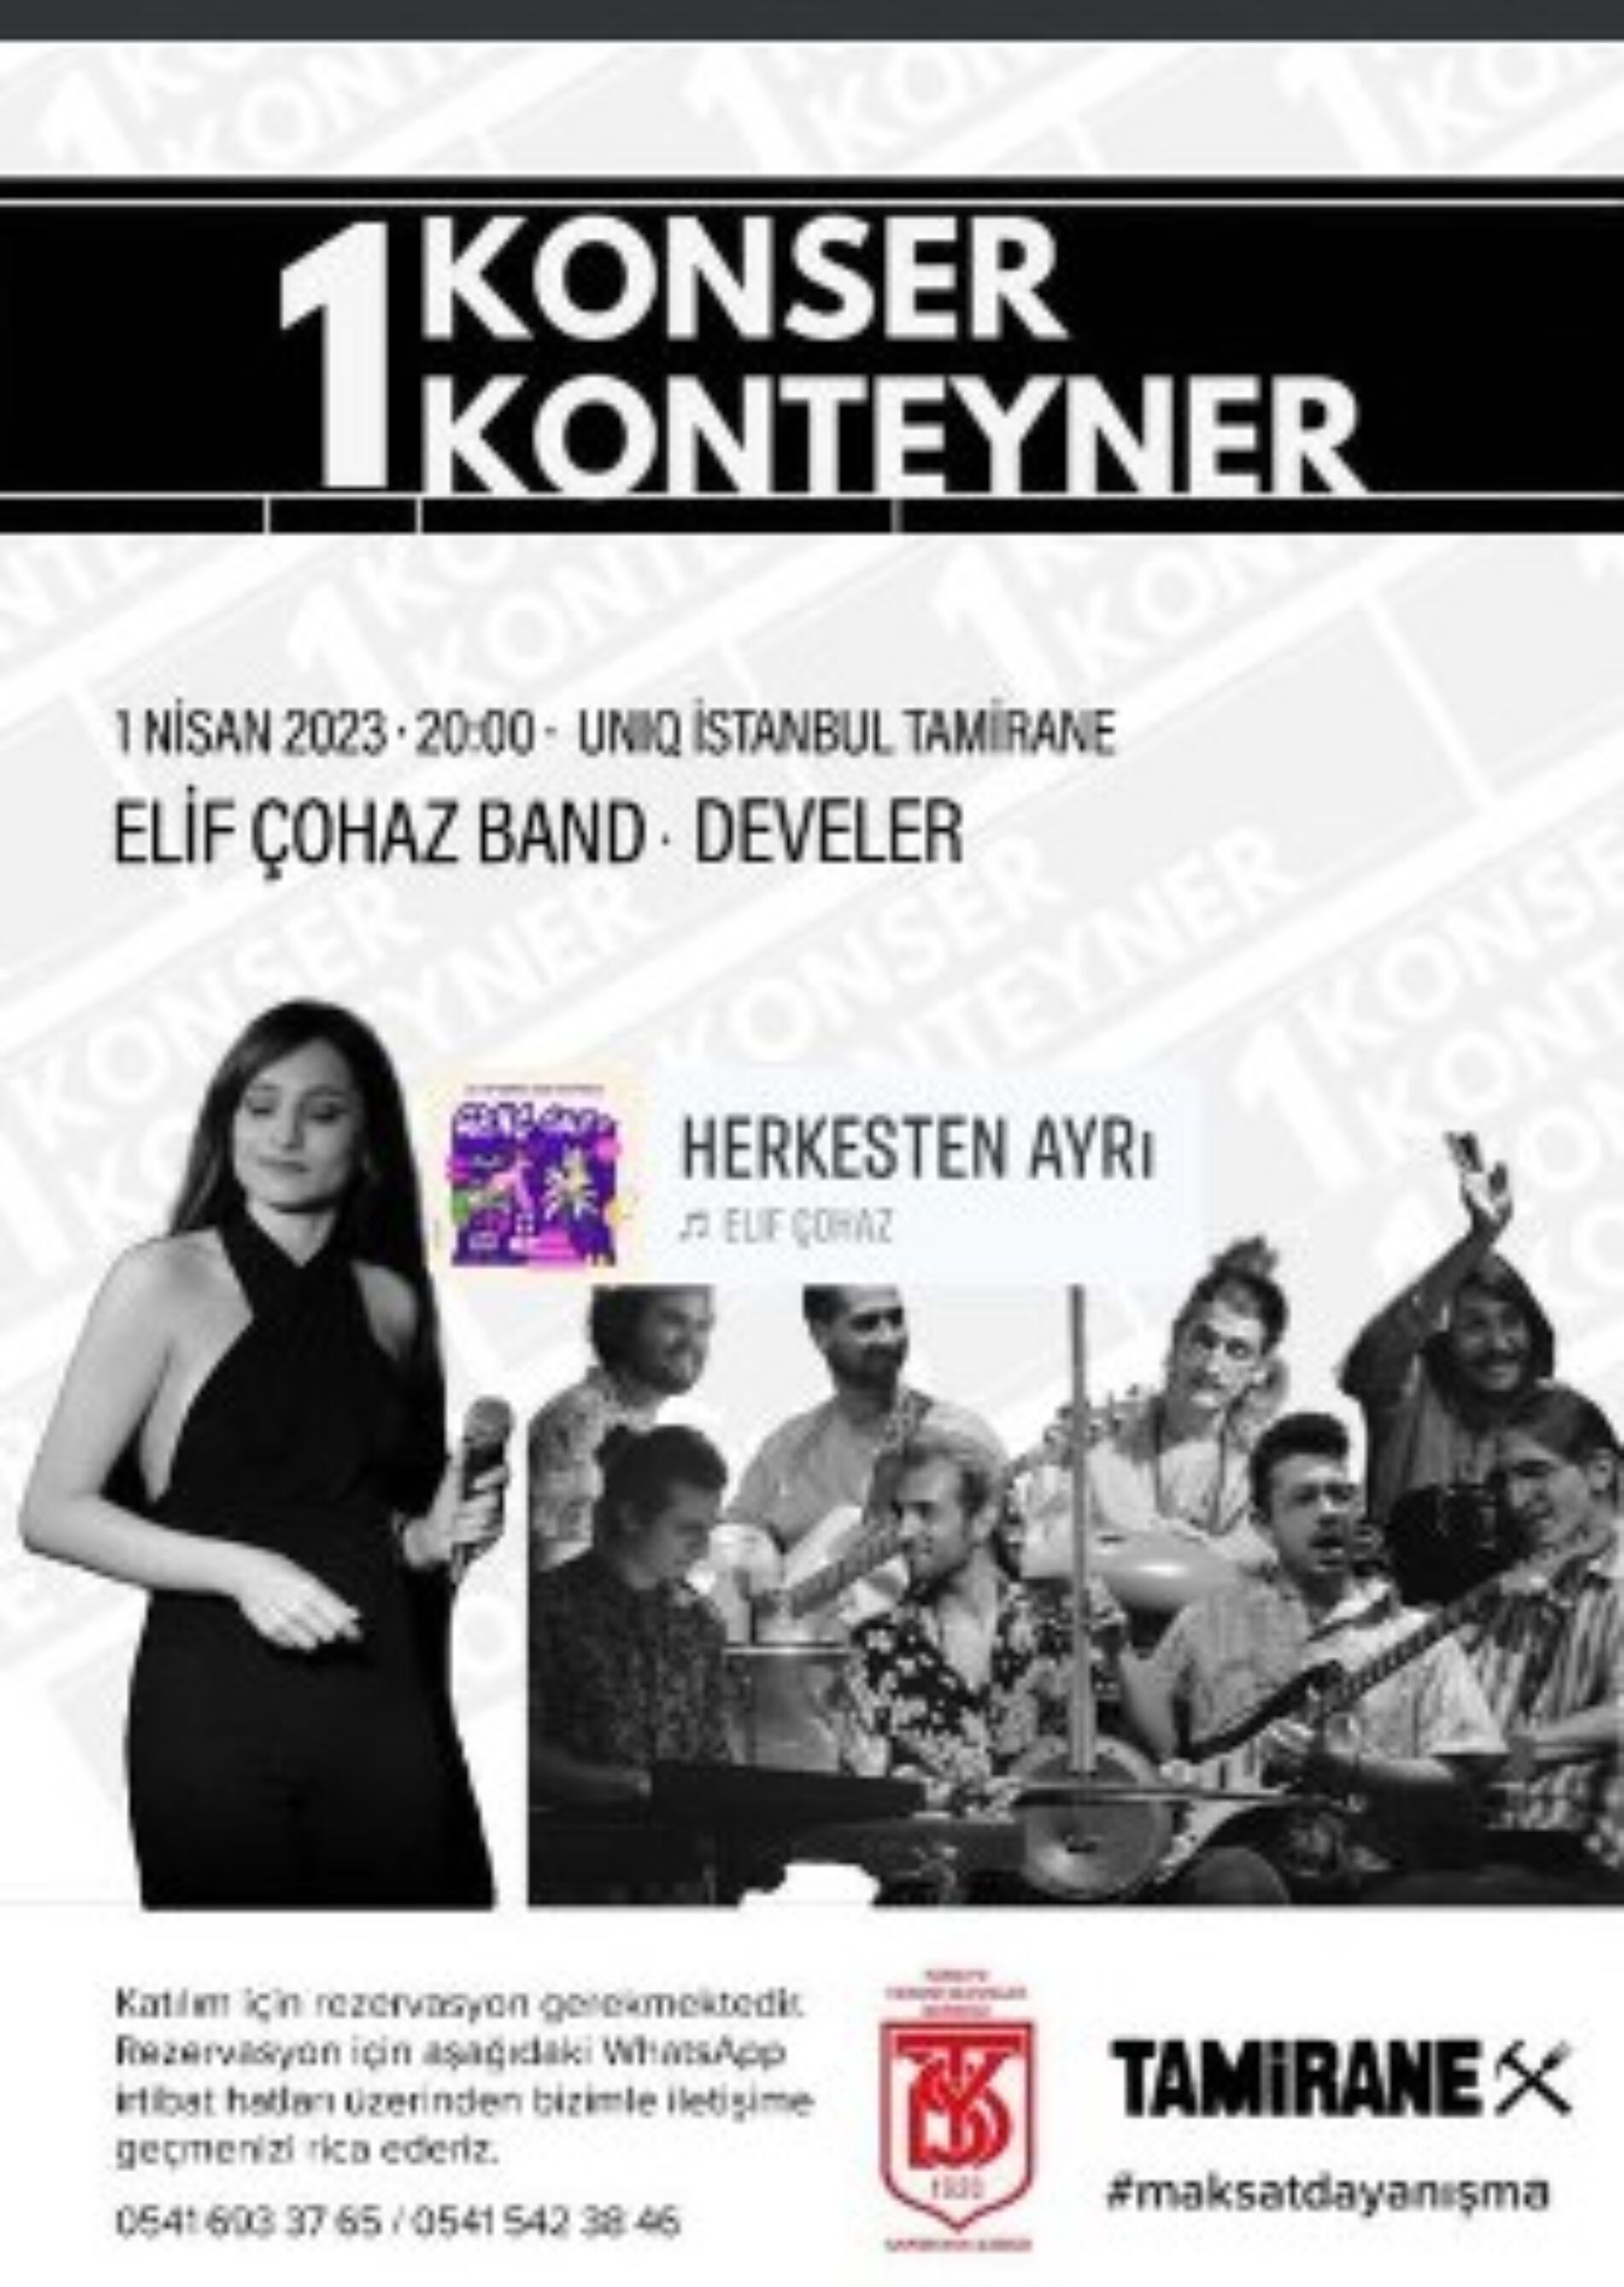 TYSD Karşıyaka Şubemiz Birlikte 1 Konser 1 Konteyner Yardım Etkinliğine Ev Sahipliği Yapmıştır